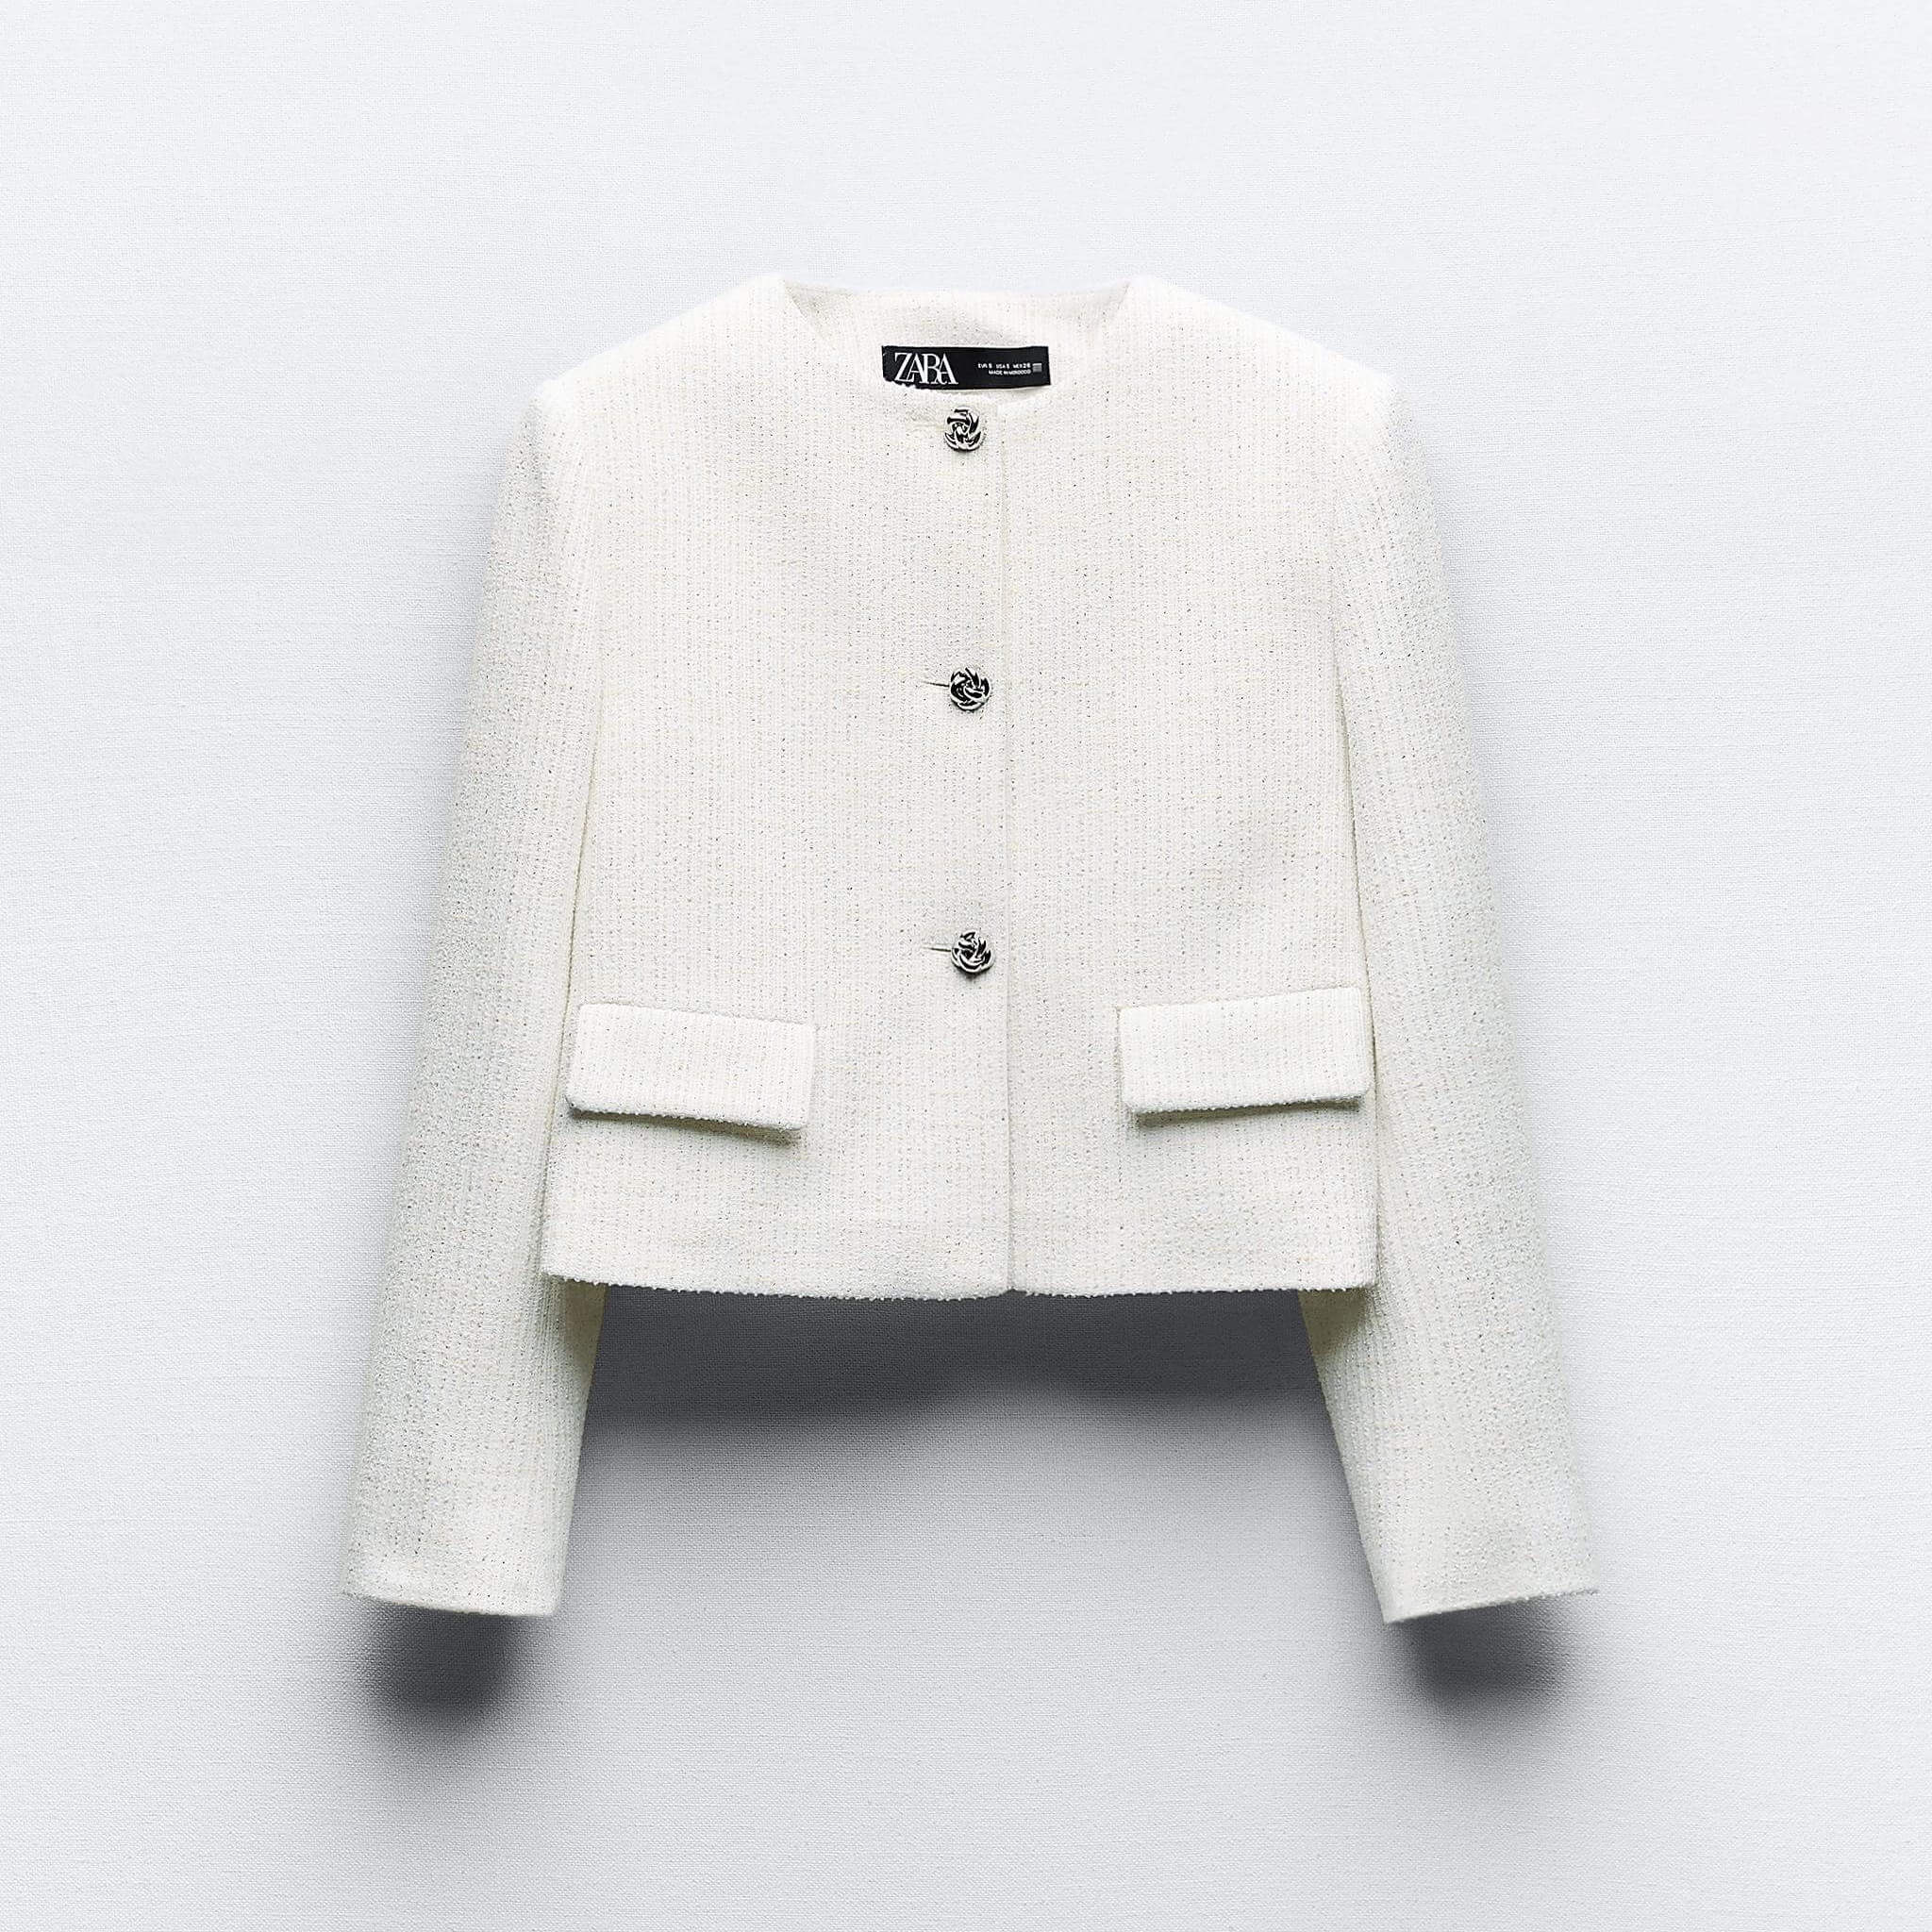 Блейзер Zara Textured With Metallic Thread, желтовато-белый рубашка zara satin with contrast tie желтовато белый